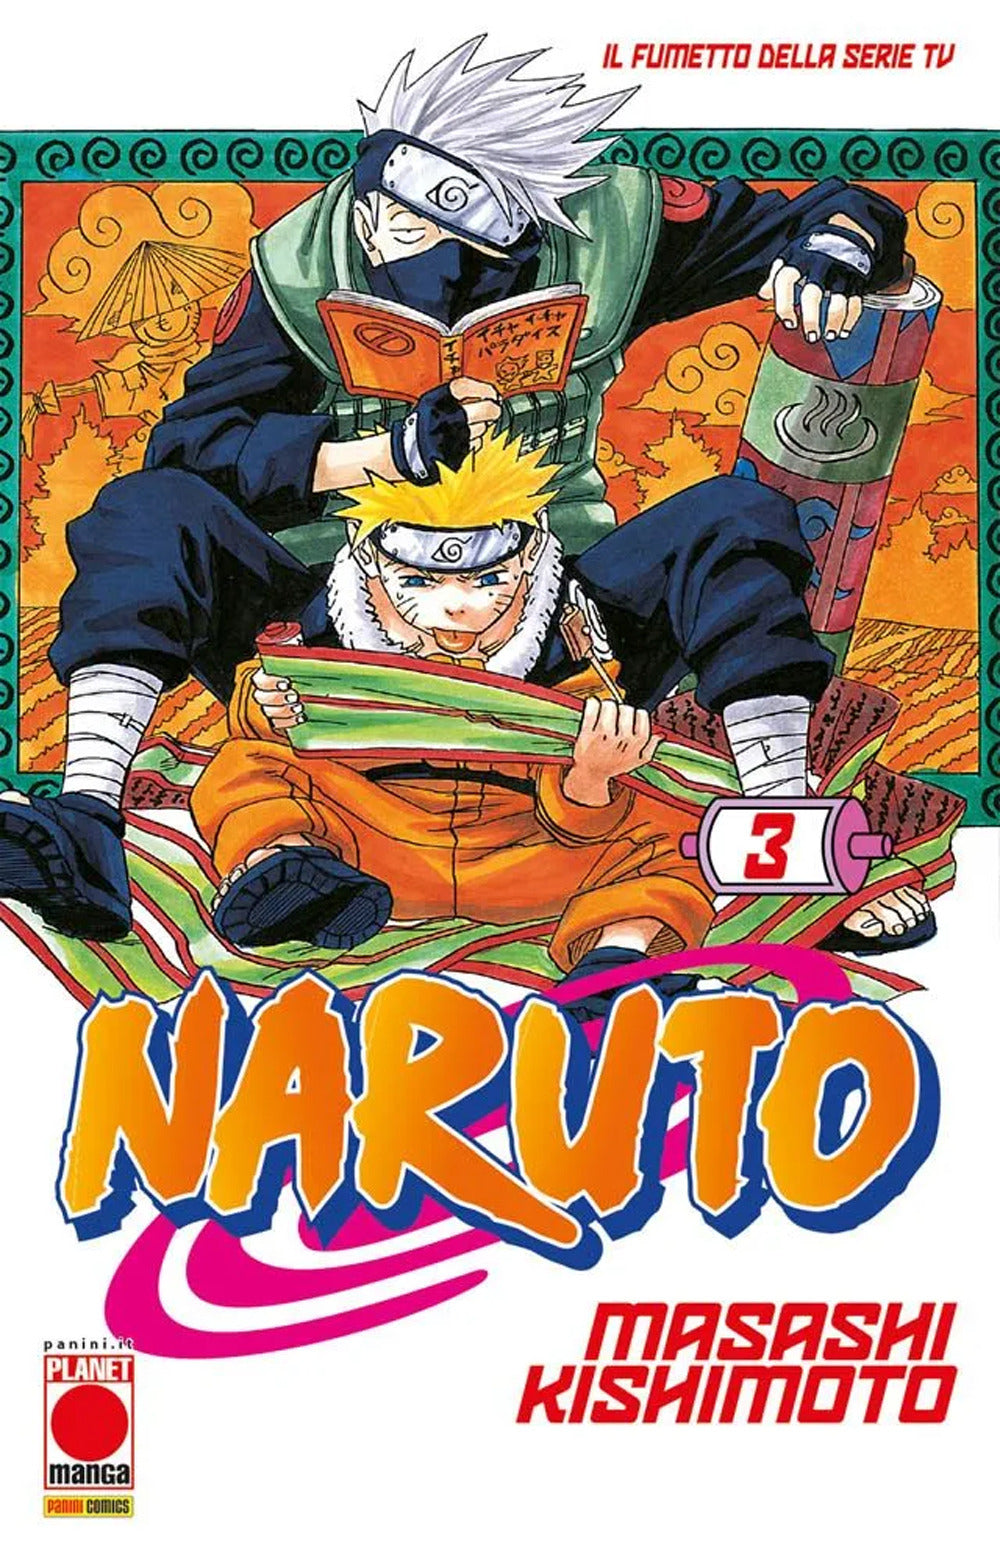 Naruto. Il mito. Vol. 3